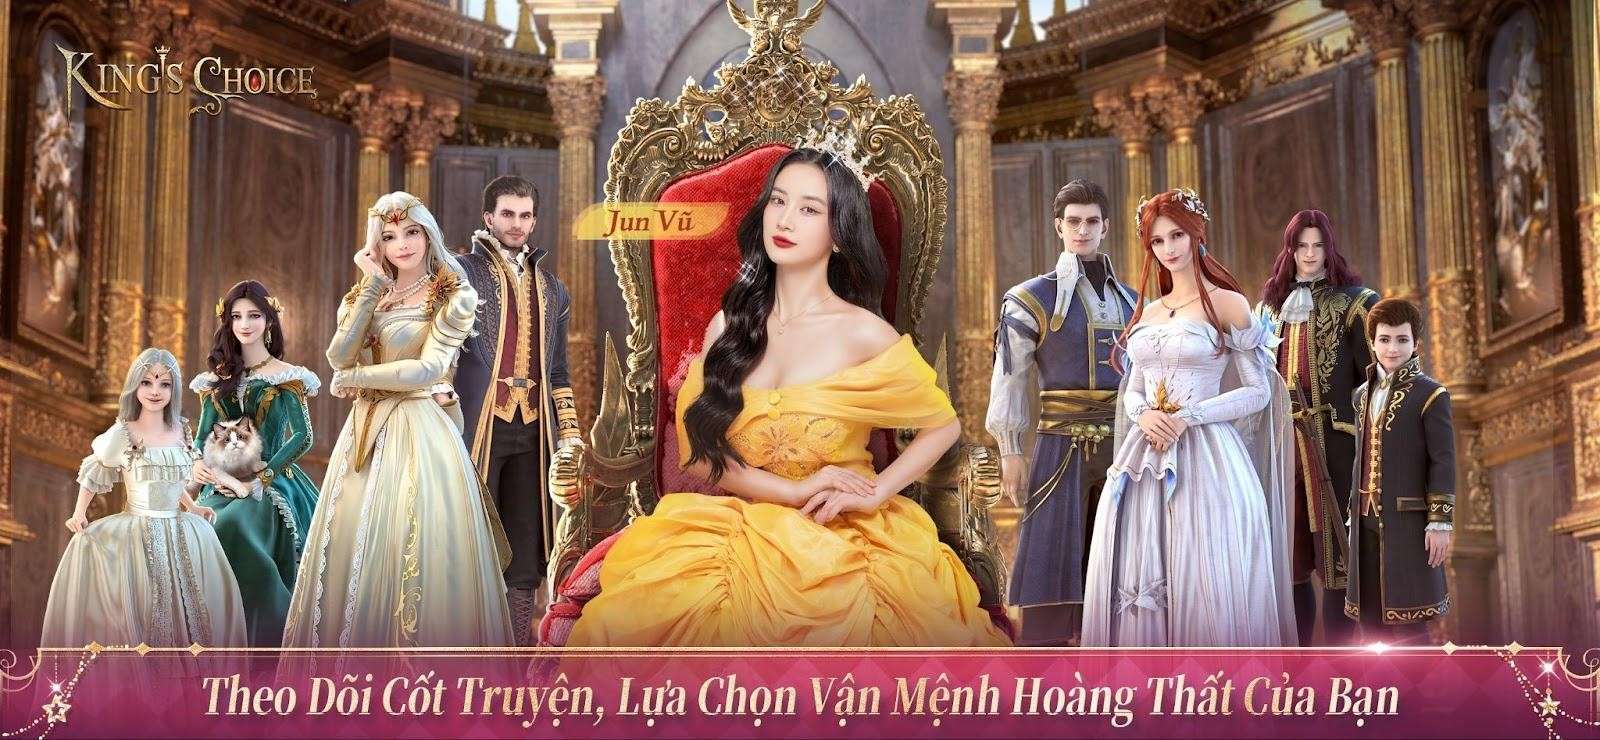 Ra mắt chính thức, King’s Choice tặng hàng loạt vật phẩm cùng khuyến mãi siêu khủng cho game thủ Việt